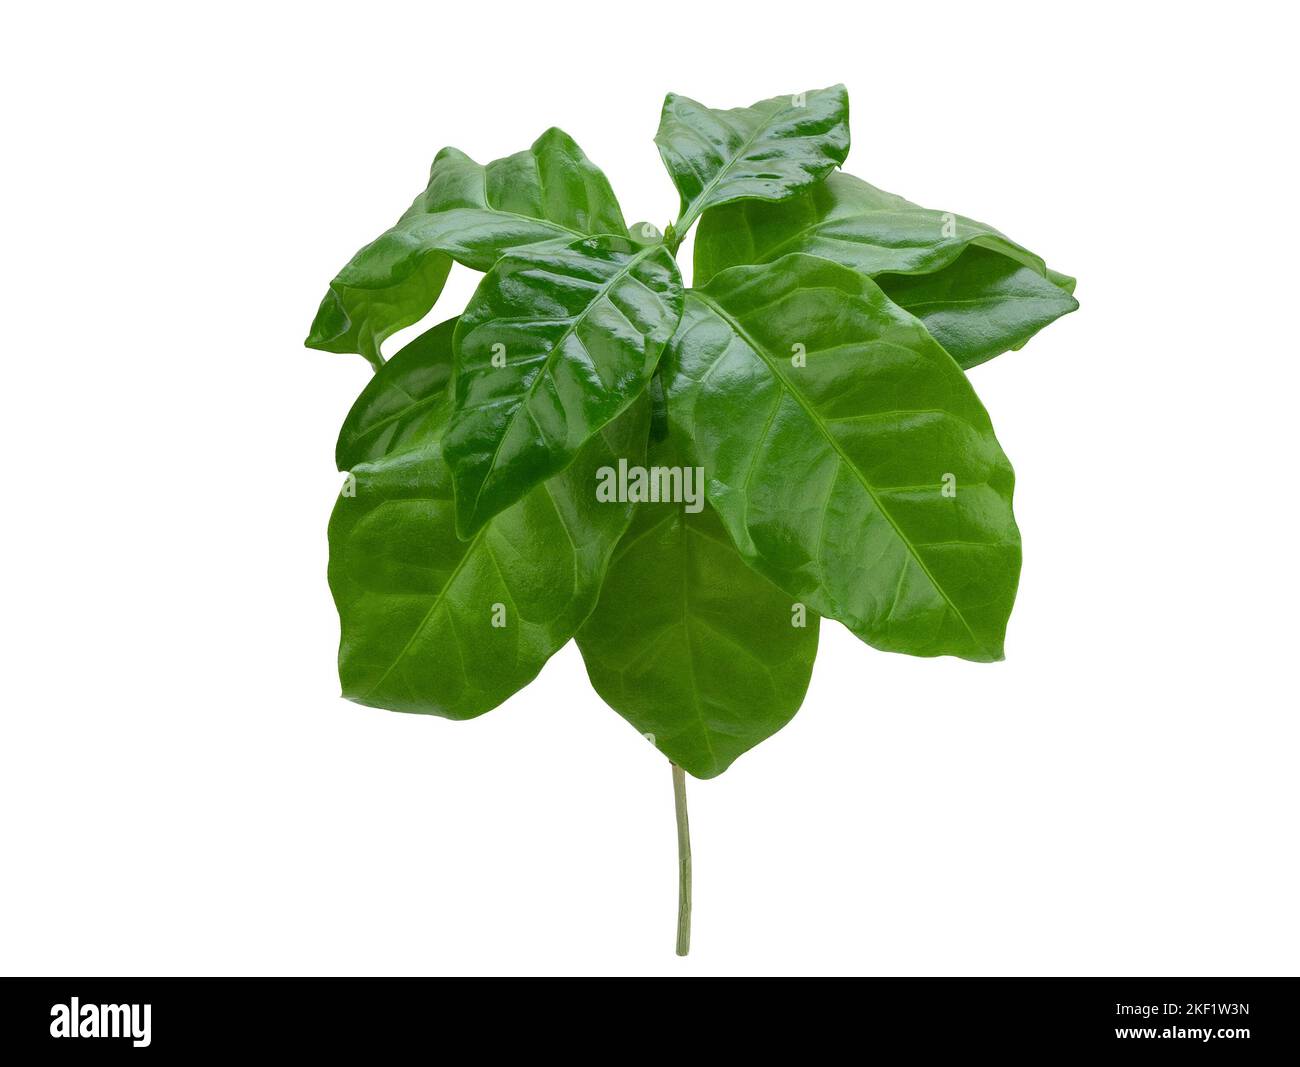 Kleiner Buschbaum mit saftig grünen glänzenden Blättern, isoliert. Junge Kaffeepflanze mit wachsartigen Blättern auf weißem Hintergrund Stockfoto